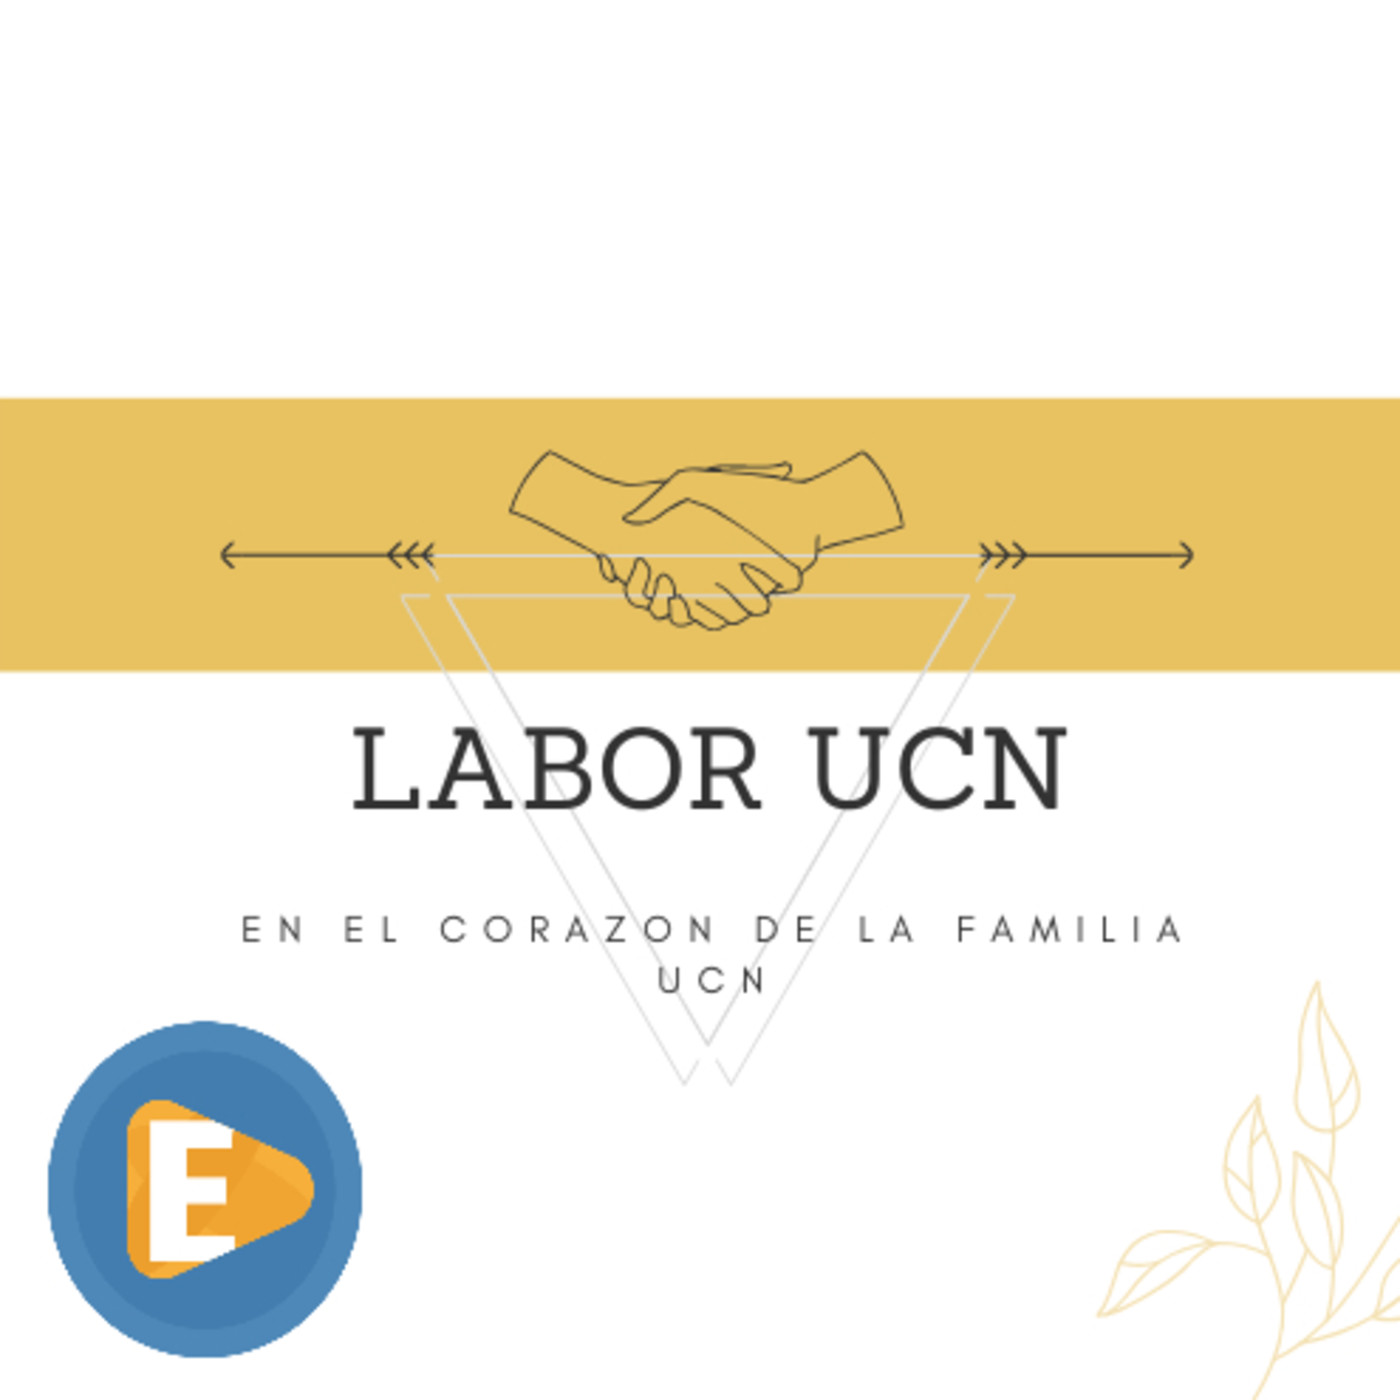 Labor UCN - Sebastián hincapié, Analista seguridad y salud en el trabajo